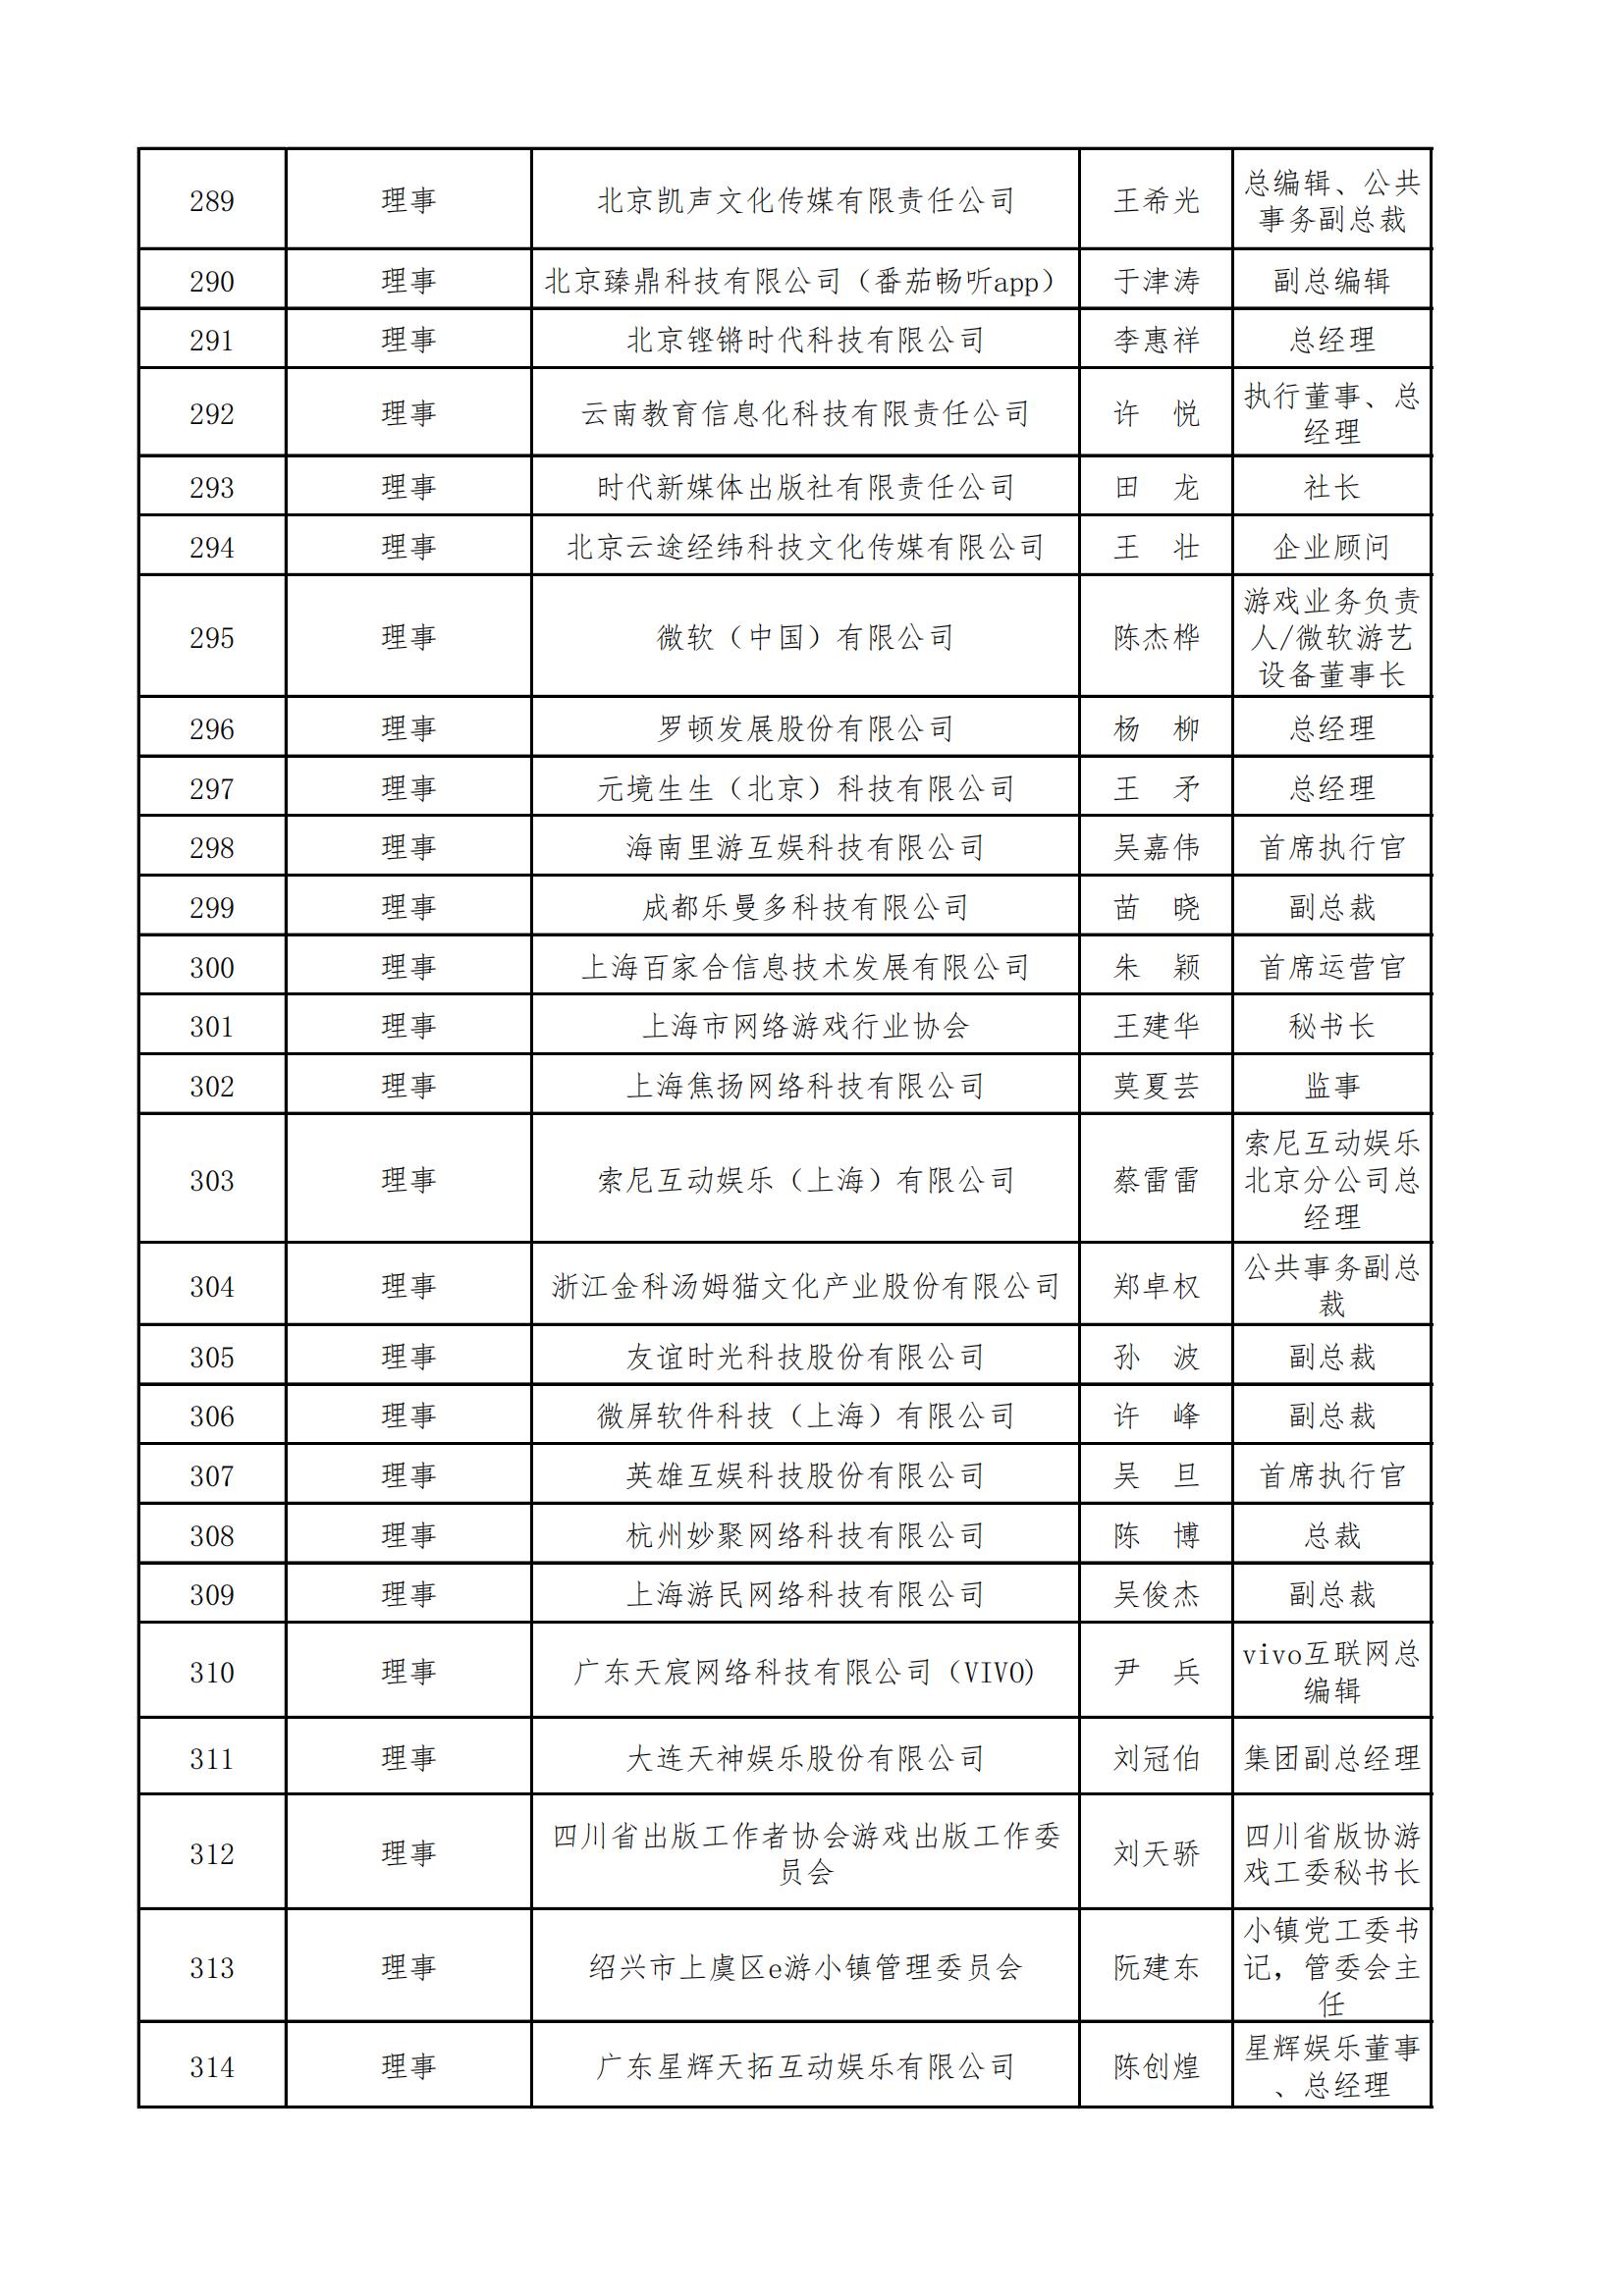 中国音像与数字出版协会第五届理事会名录_10.jpg